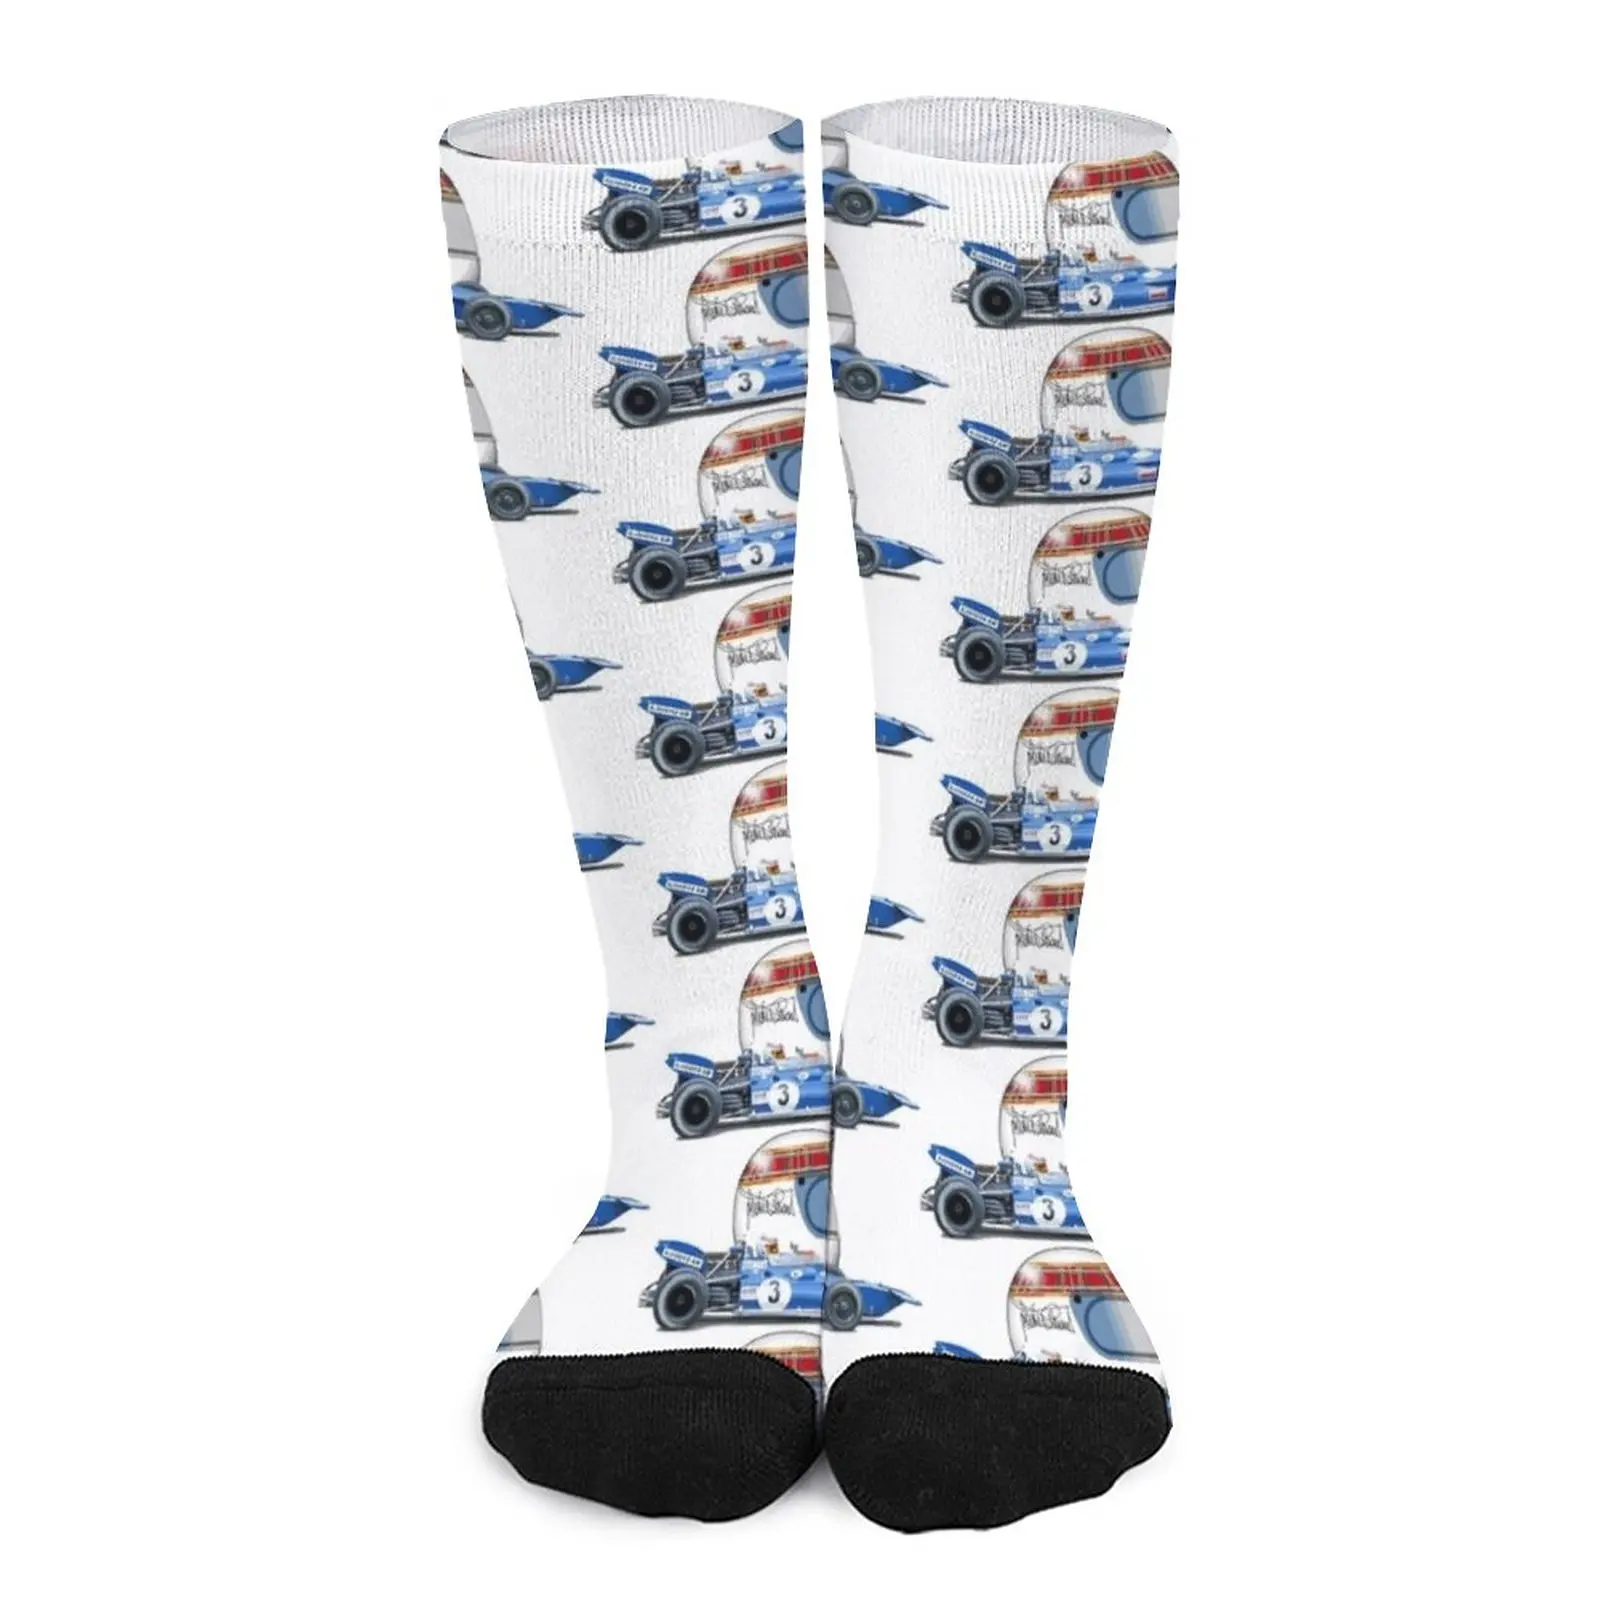 Jackie Stewart Tyrrell 001 '1970–71 F1 Racer Socks Socks female Women socks Men gift Wholesale